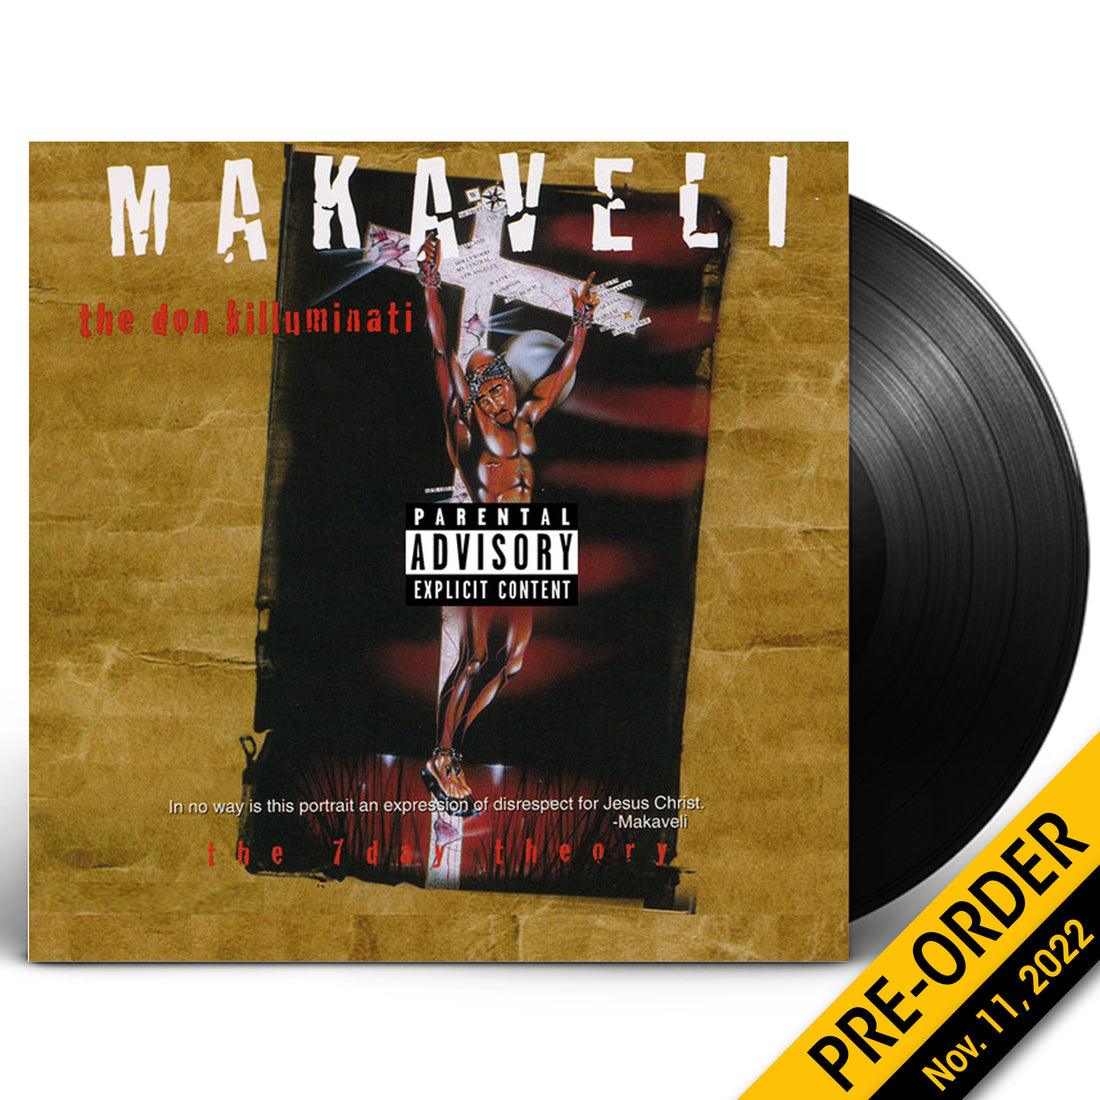 Makaveli "The Don Killuminati: The 7 Day Theory" 2xLP Vinyl